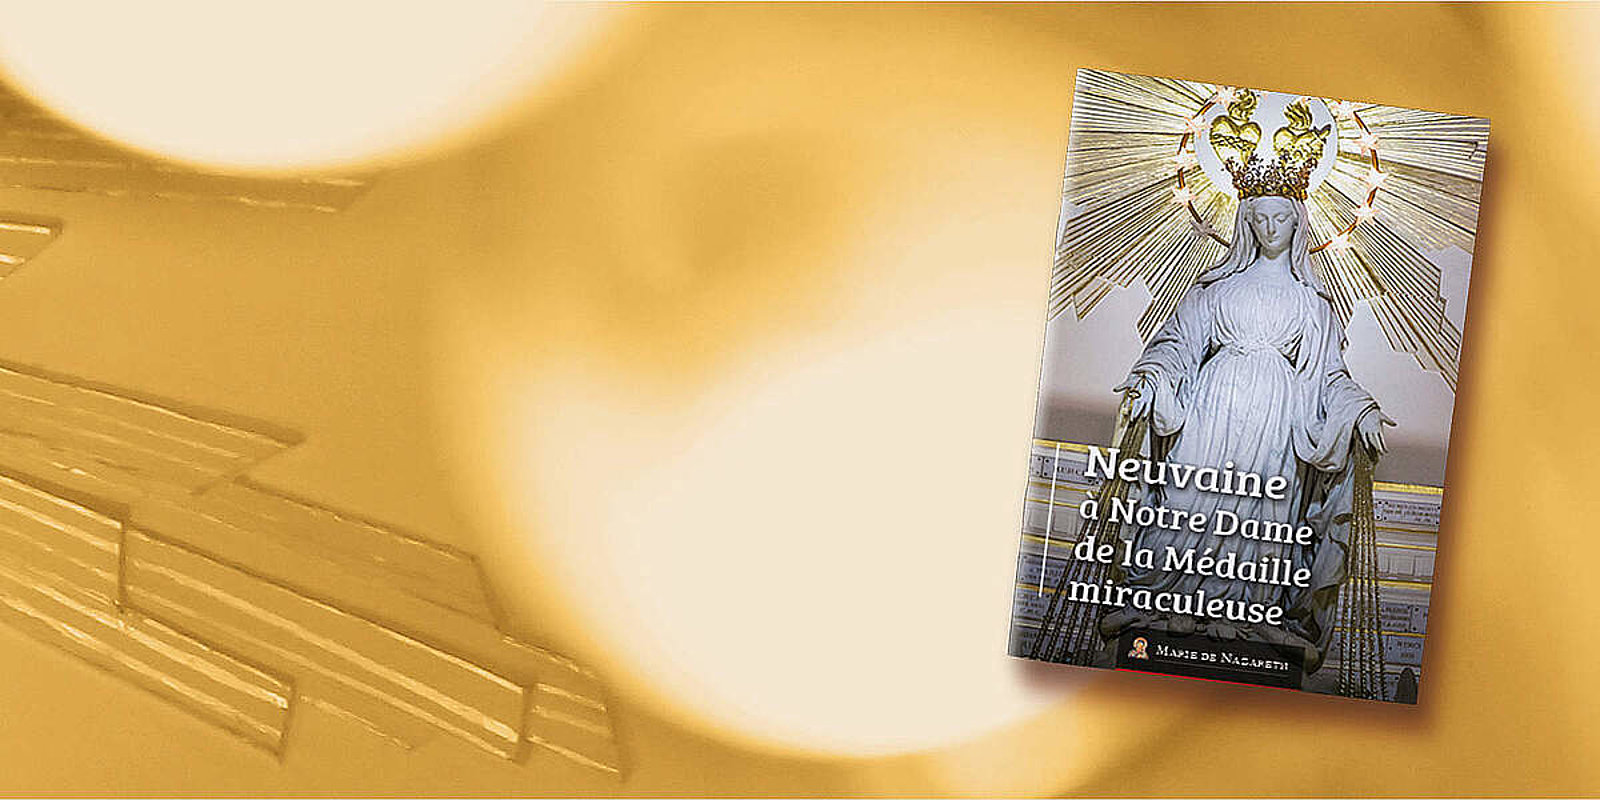 Le livret de la neuvaine à Notre Dame de la Médaille miraculeuse est disponible ! 